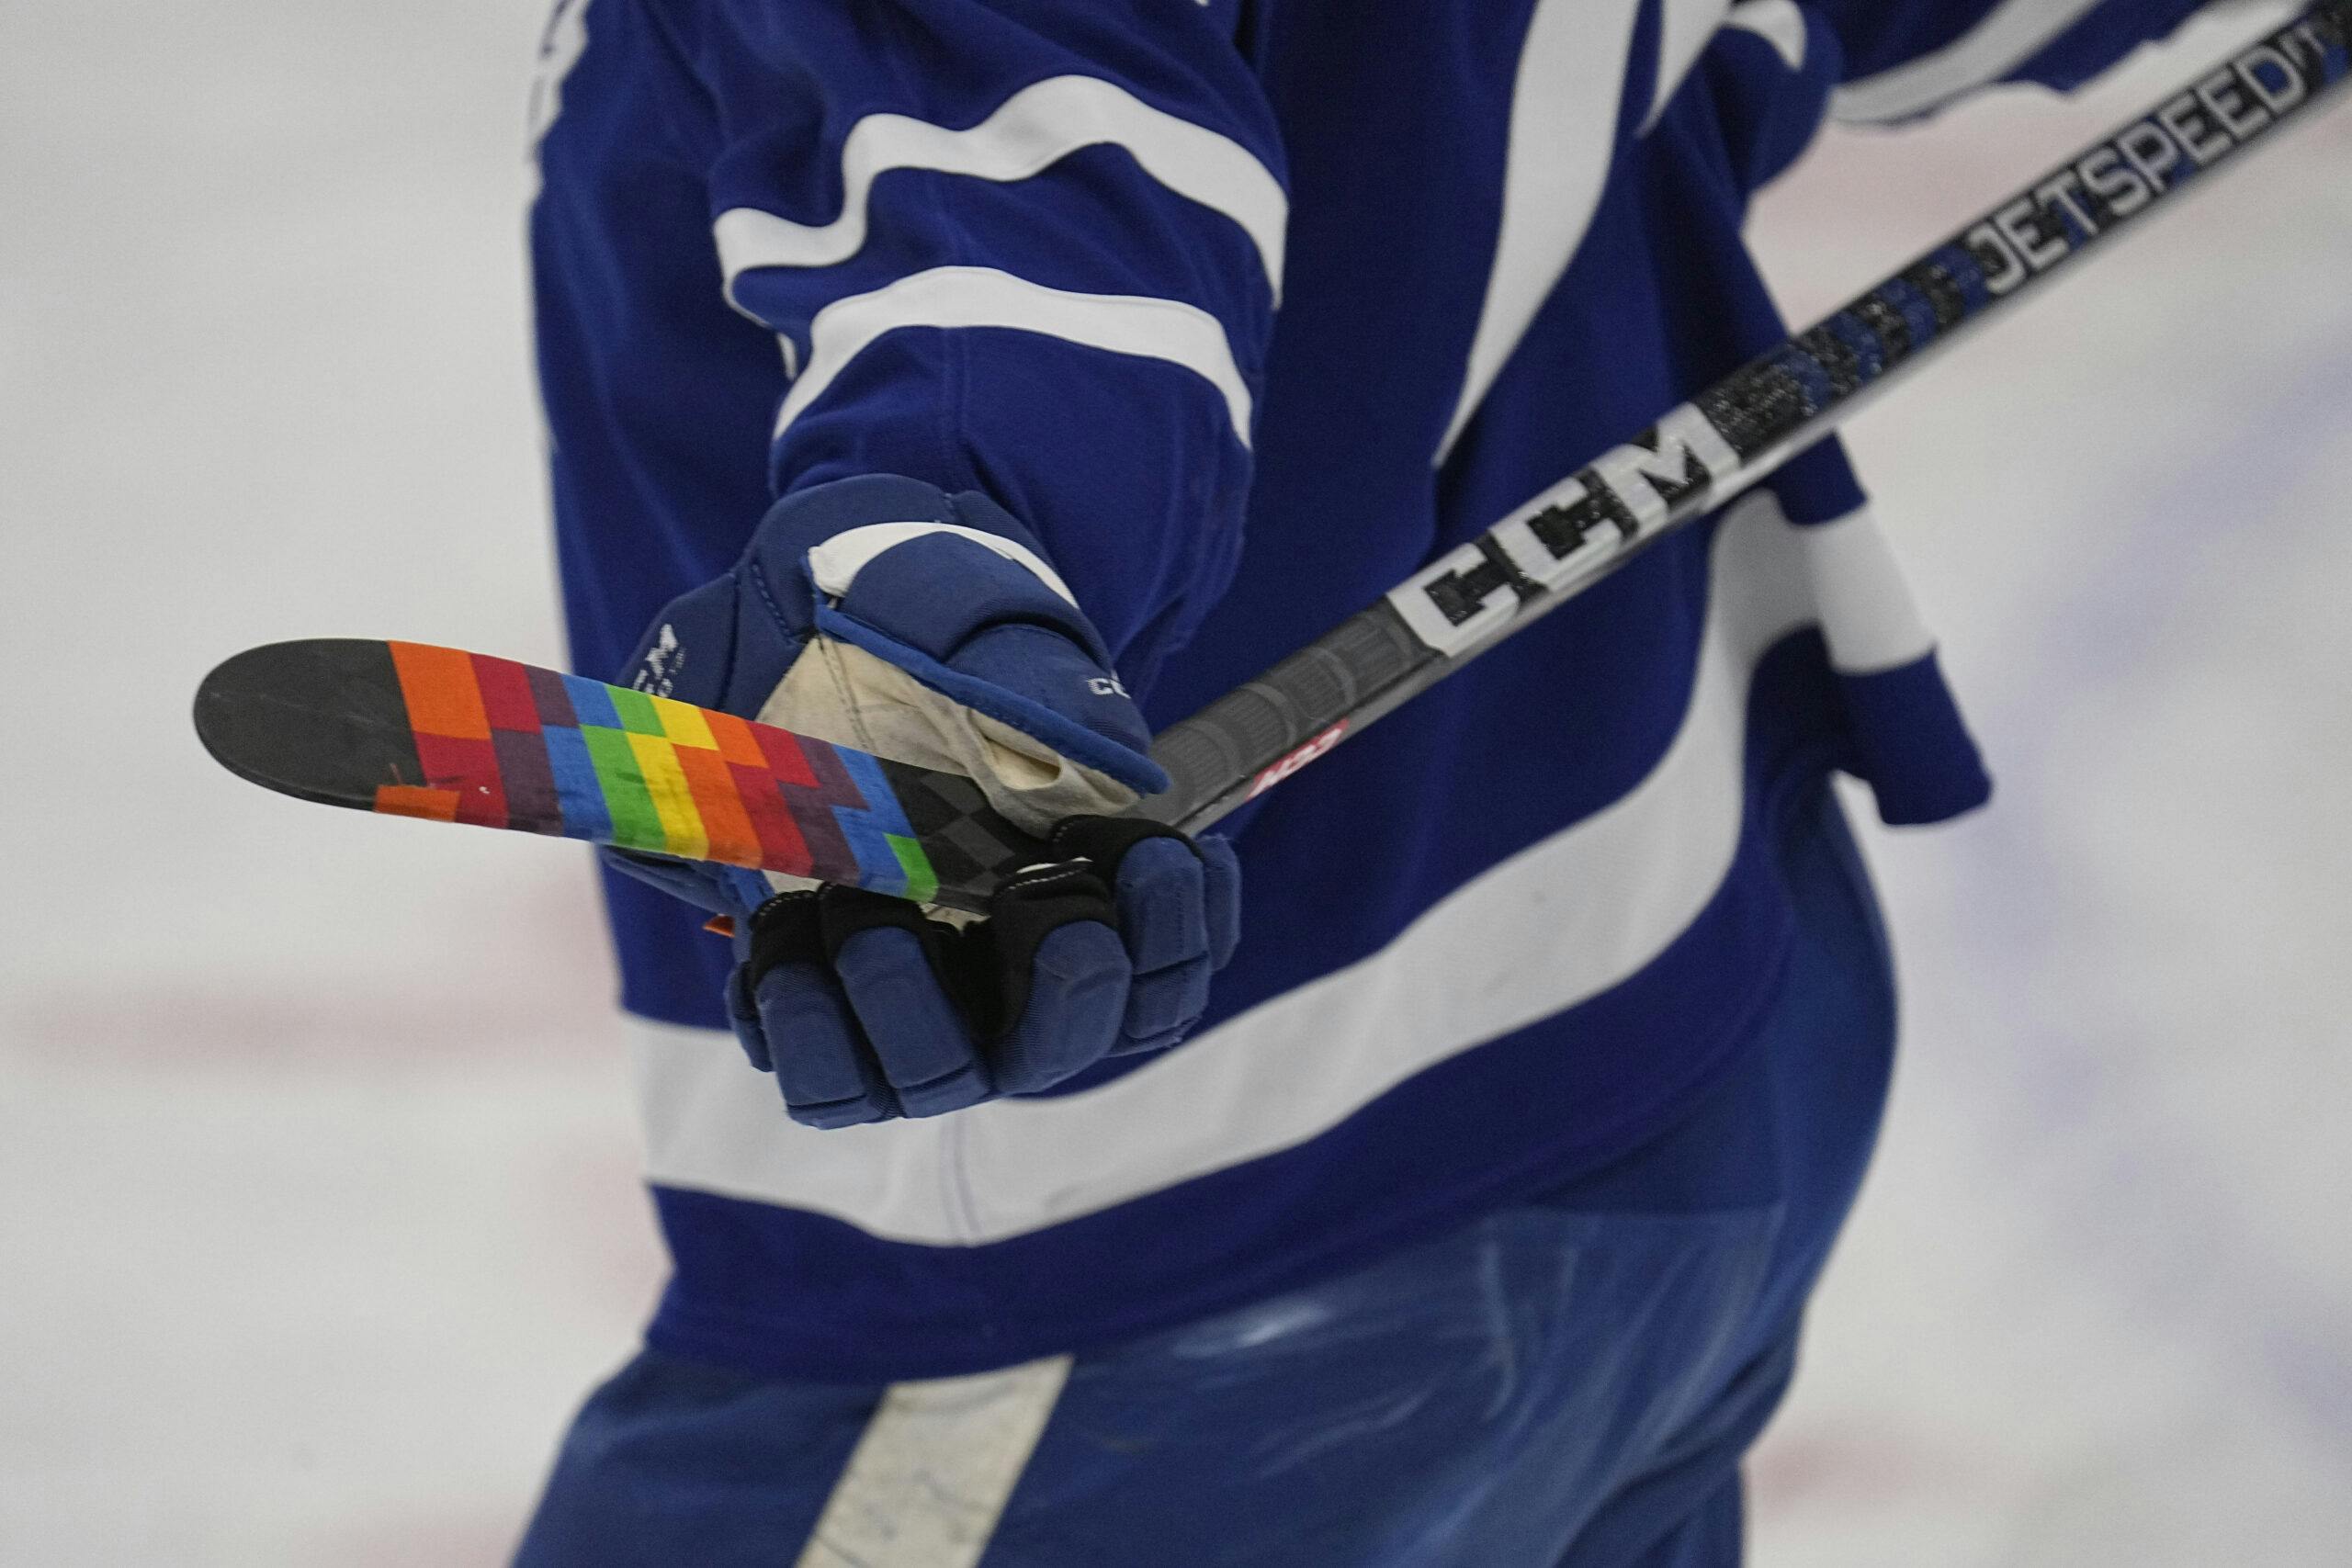 Toronto Maple Leafs Goalie Cut Jersey